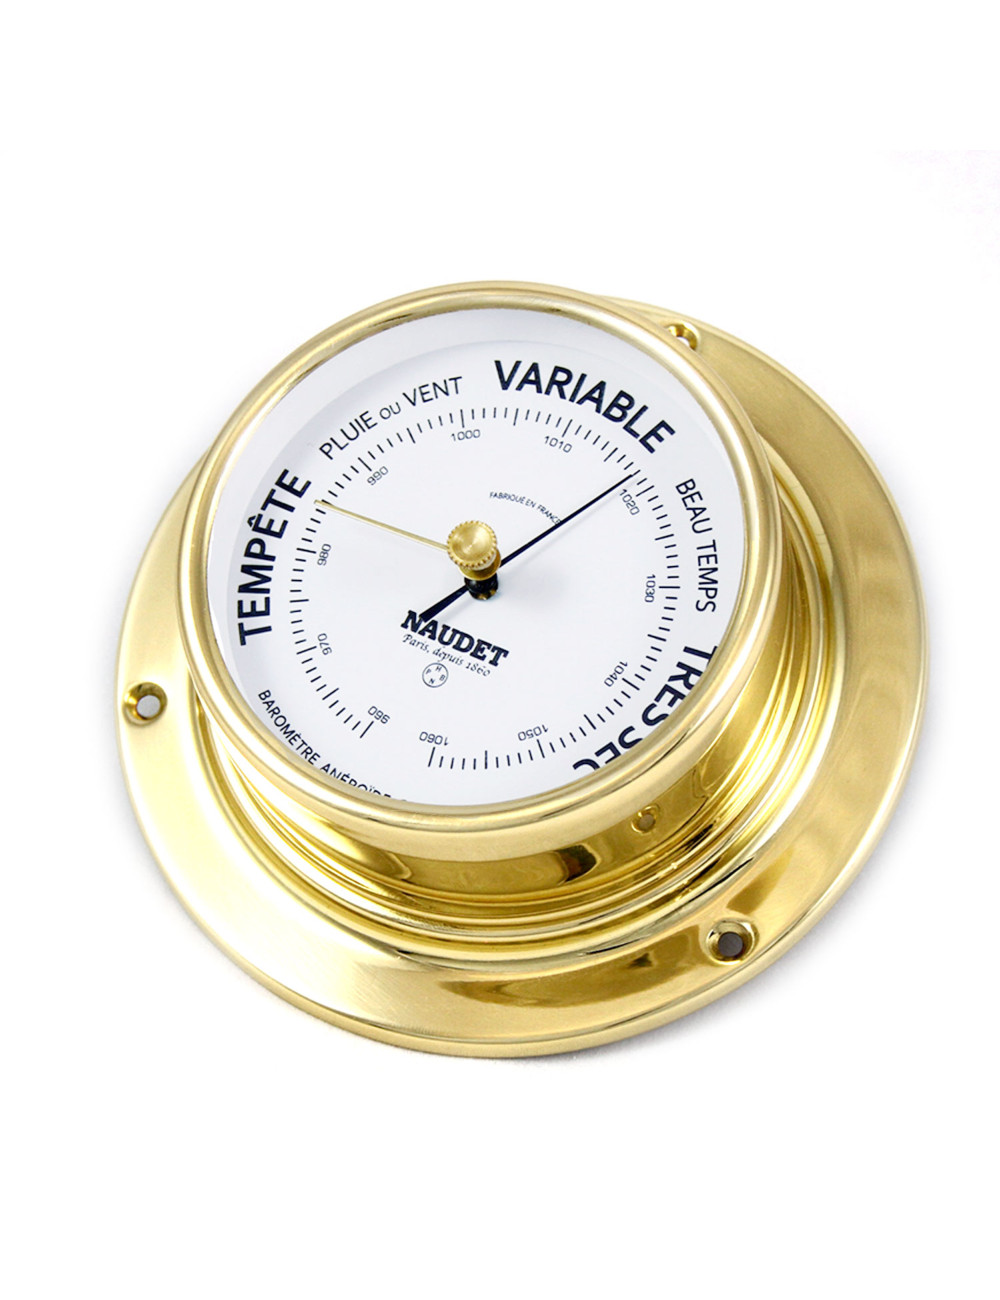 Thermomètre/ hygromètre de précision NAUDET laiton 10cm